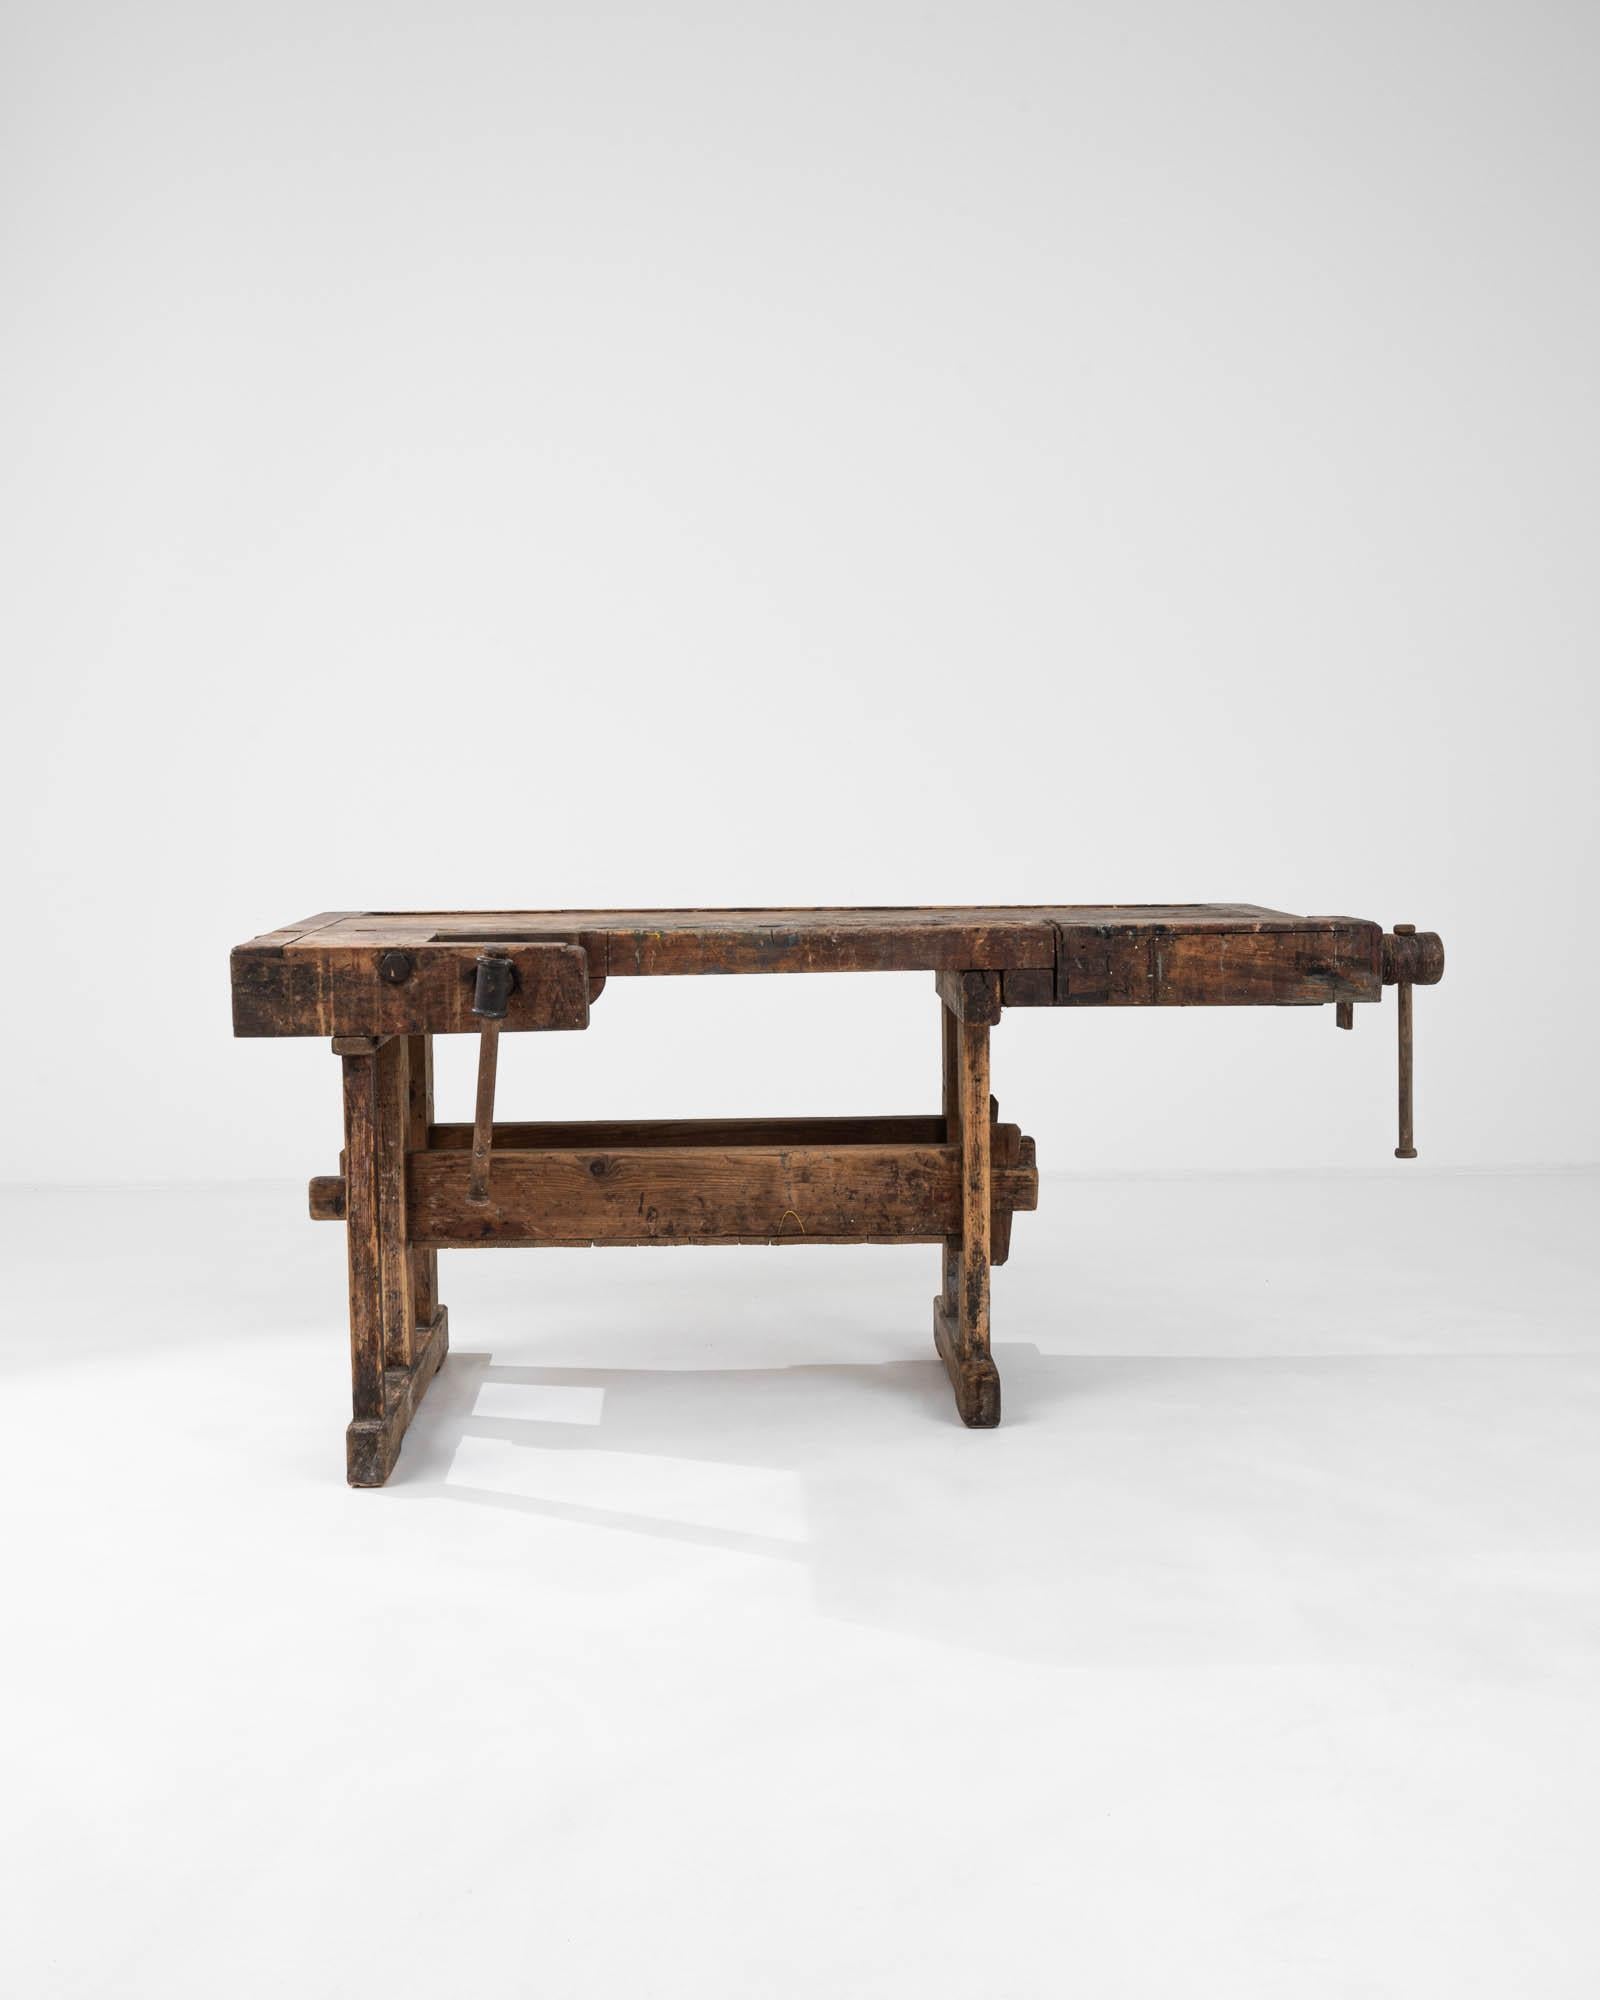 Dieser belgische Holztisch aus dem 20. Jahrhundert ist ein Zeugnis für die dauerhafte Stärke und robuste Schönheit traditioneller Handwerkskunst. Dieser aus Massivholz gefertigte Arbeitstisch strahlt mit seiner abgenutzten Oberfläche und den